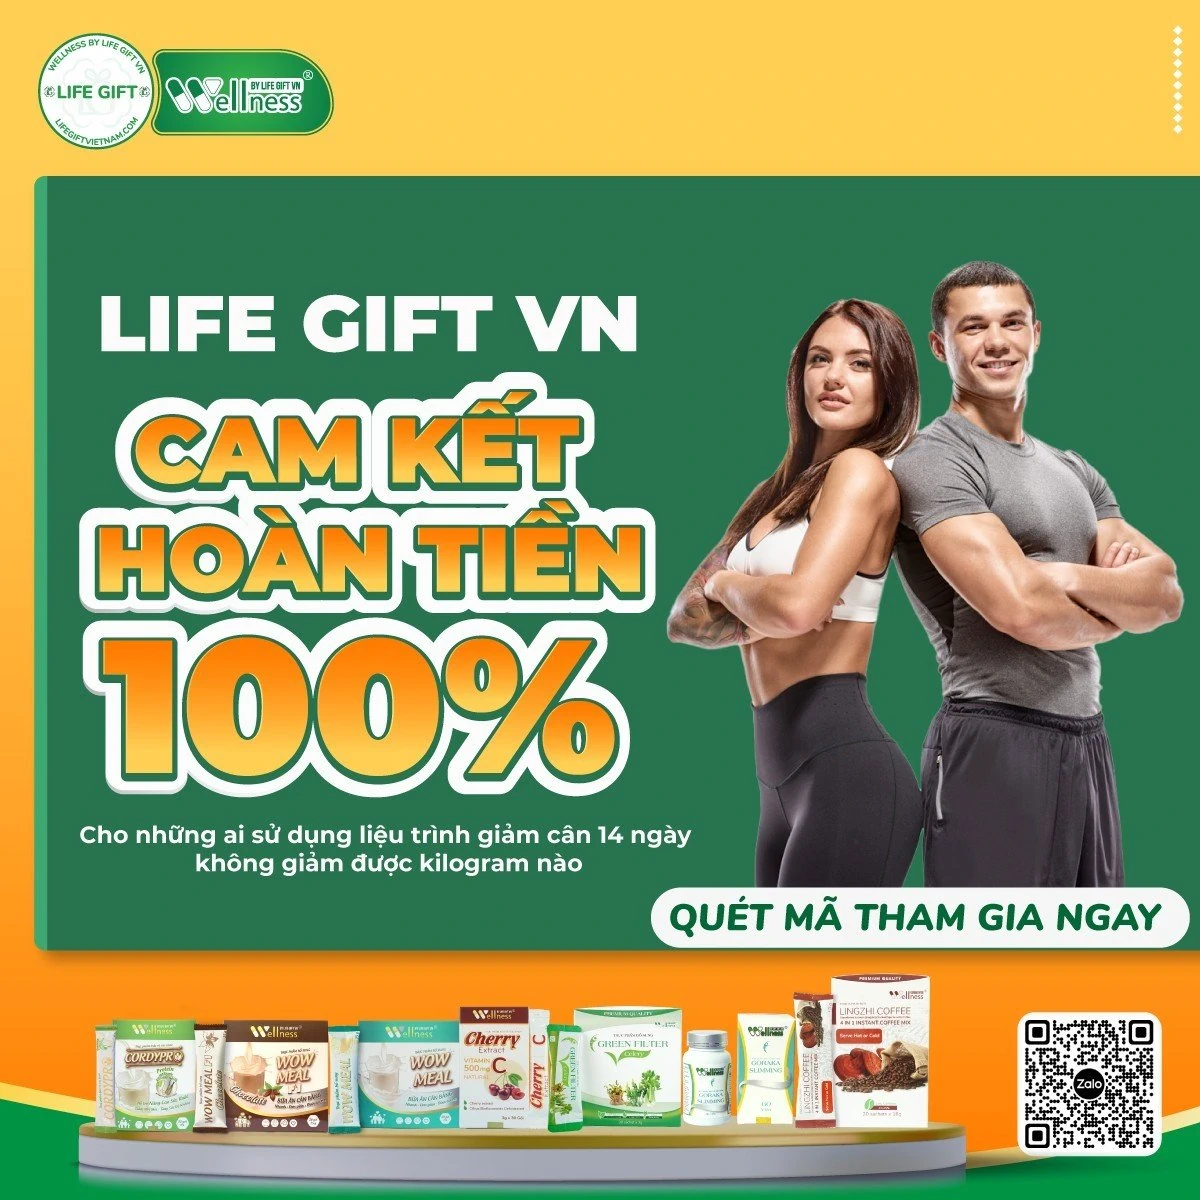 Life Gift VN Cam Kết Hoàn Tiền 100% Cho Những Ai Sử Dụng Liệu Trình 14 Ngày Mà Không Giảm được Kg Nào - Droppii Shops